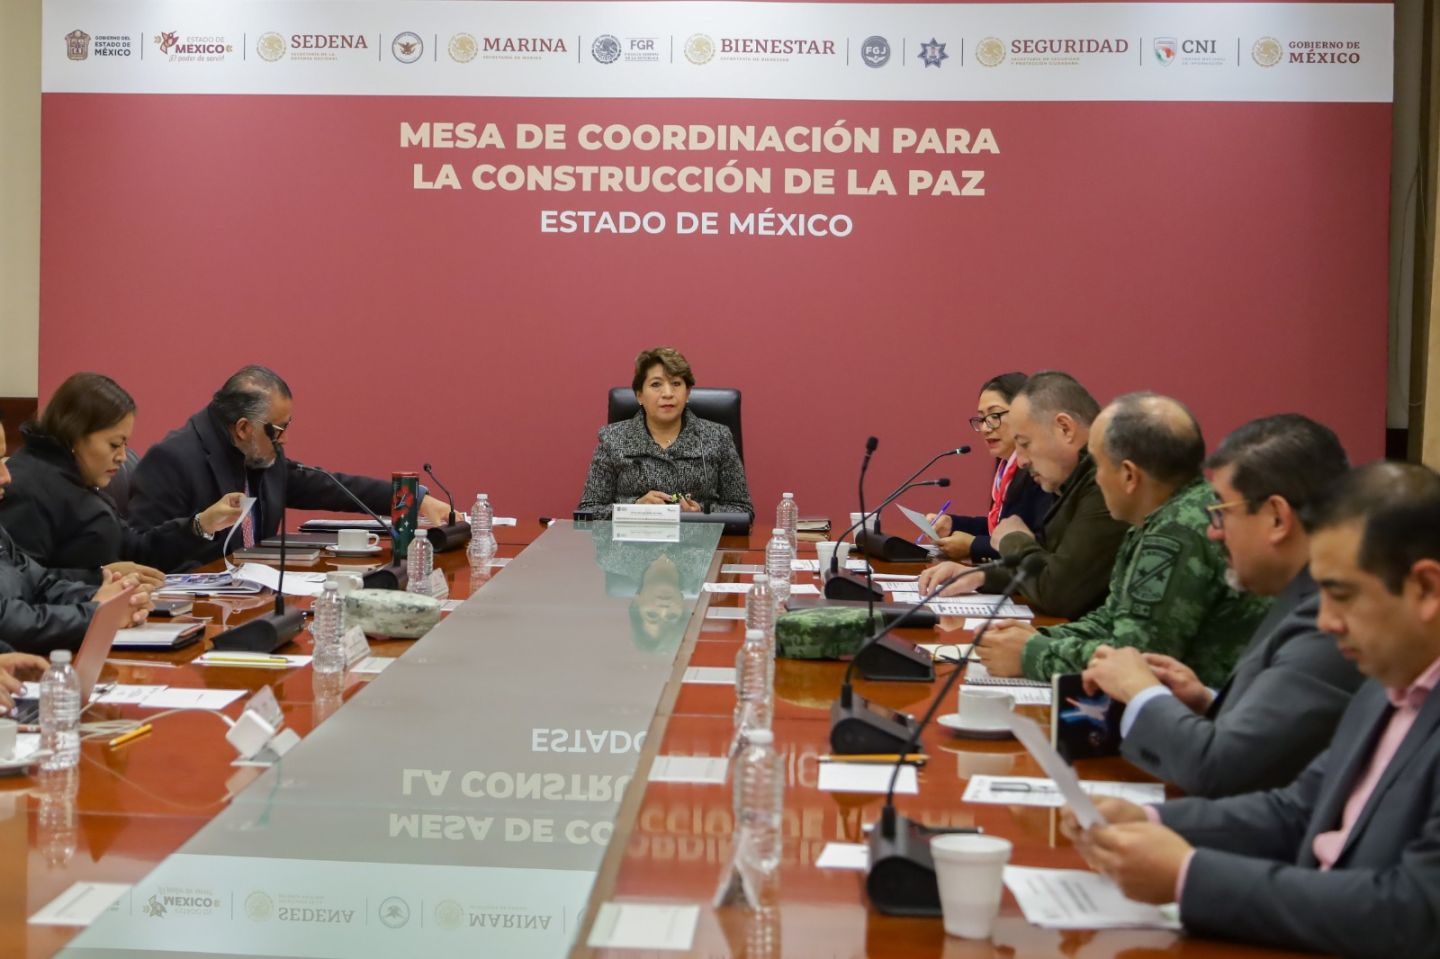 Coordinación Entre Autoridades, Indispensable Para
Consolidar un Estado de México Seguro: Delfina Gómez